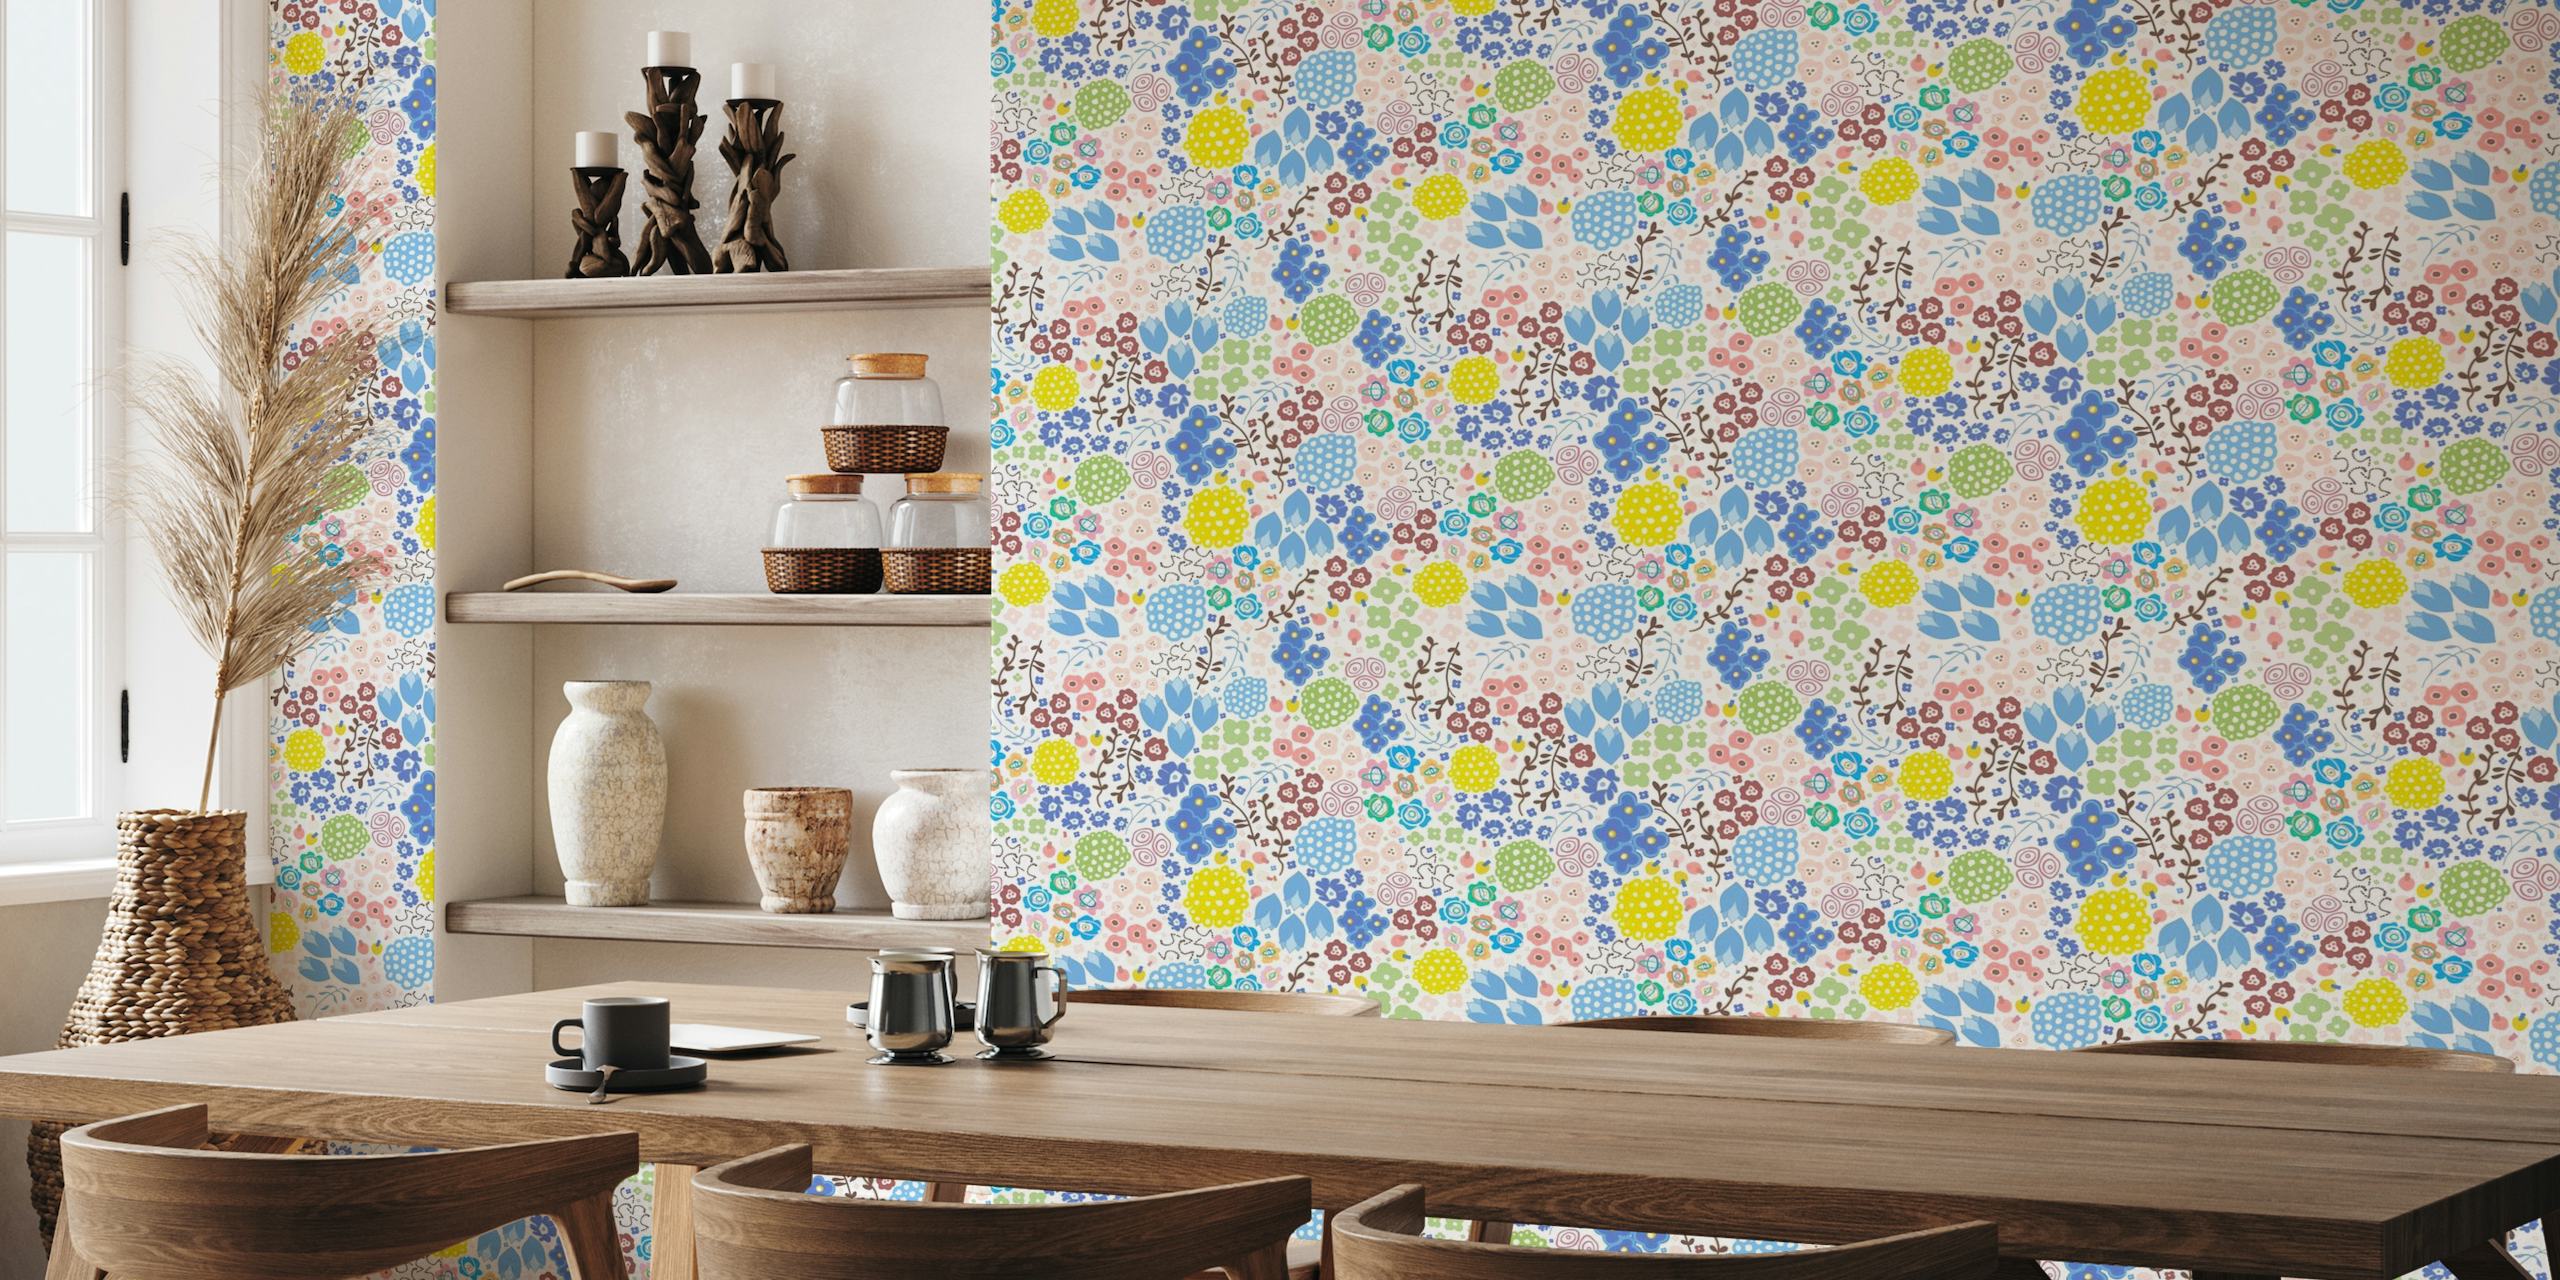 Farbenfrohes, abstraktes, modernes Blumenmuster-Wandbild mit gemischten Blumen und Blättern